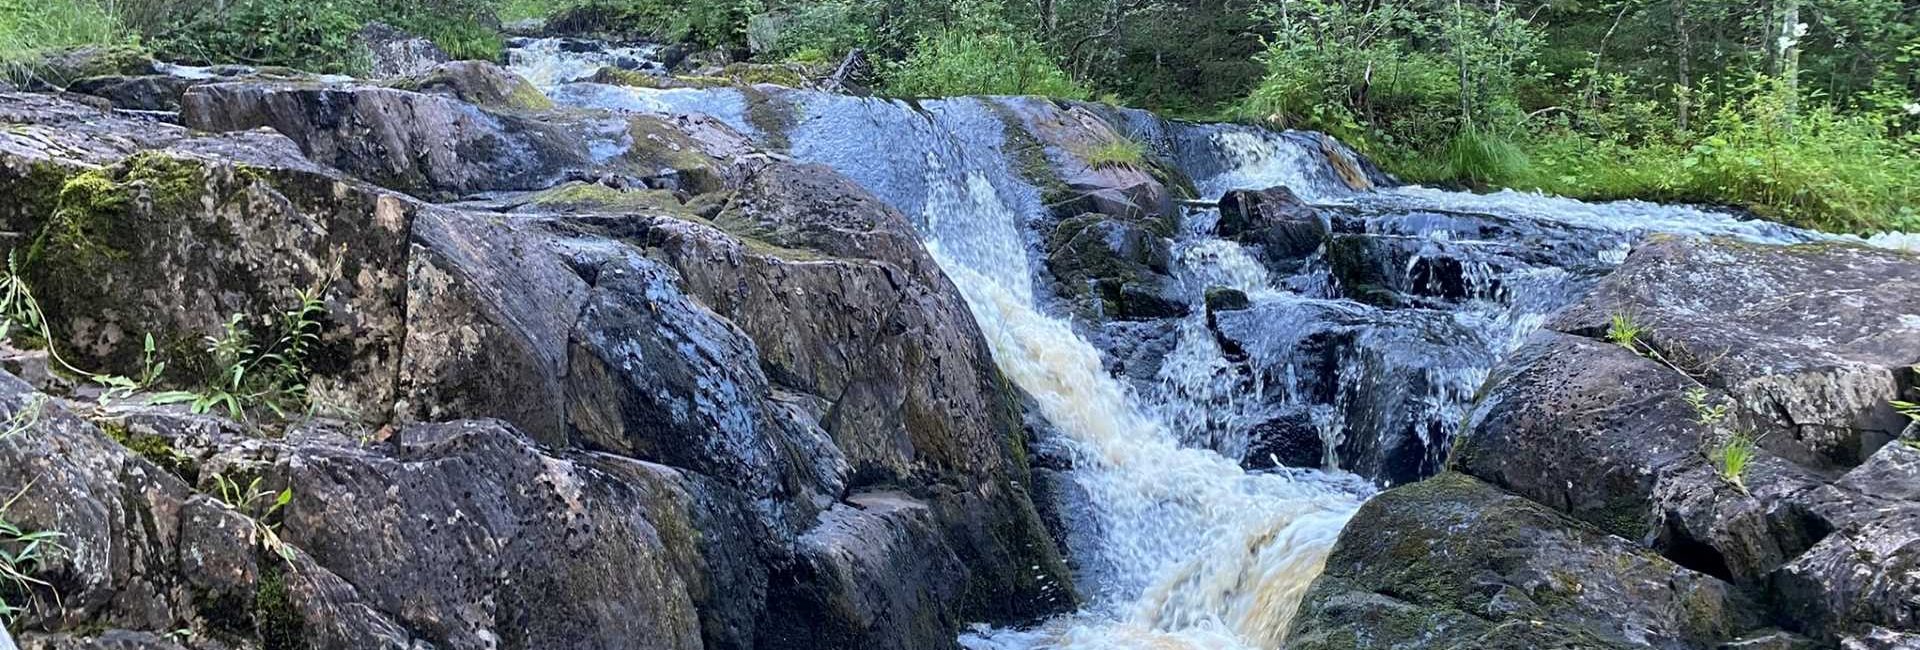 Lieje waterfall is Puolanka's best kept secret